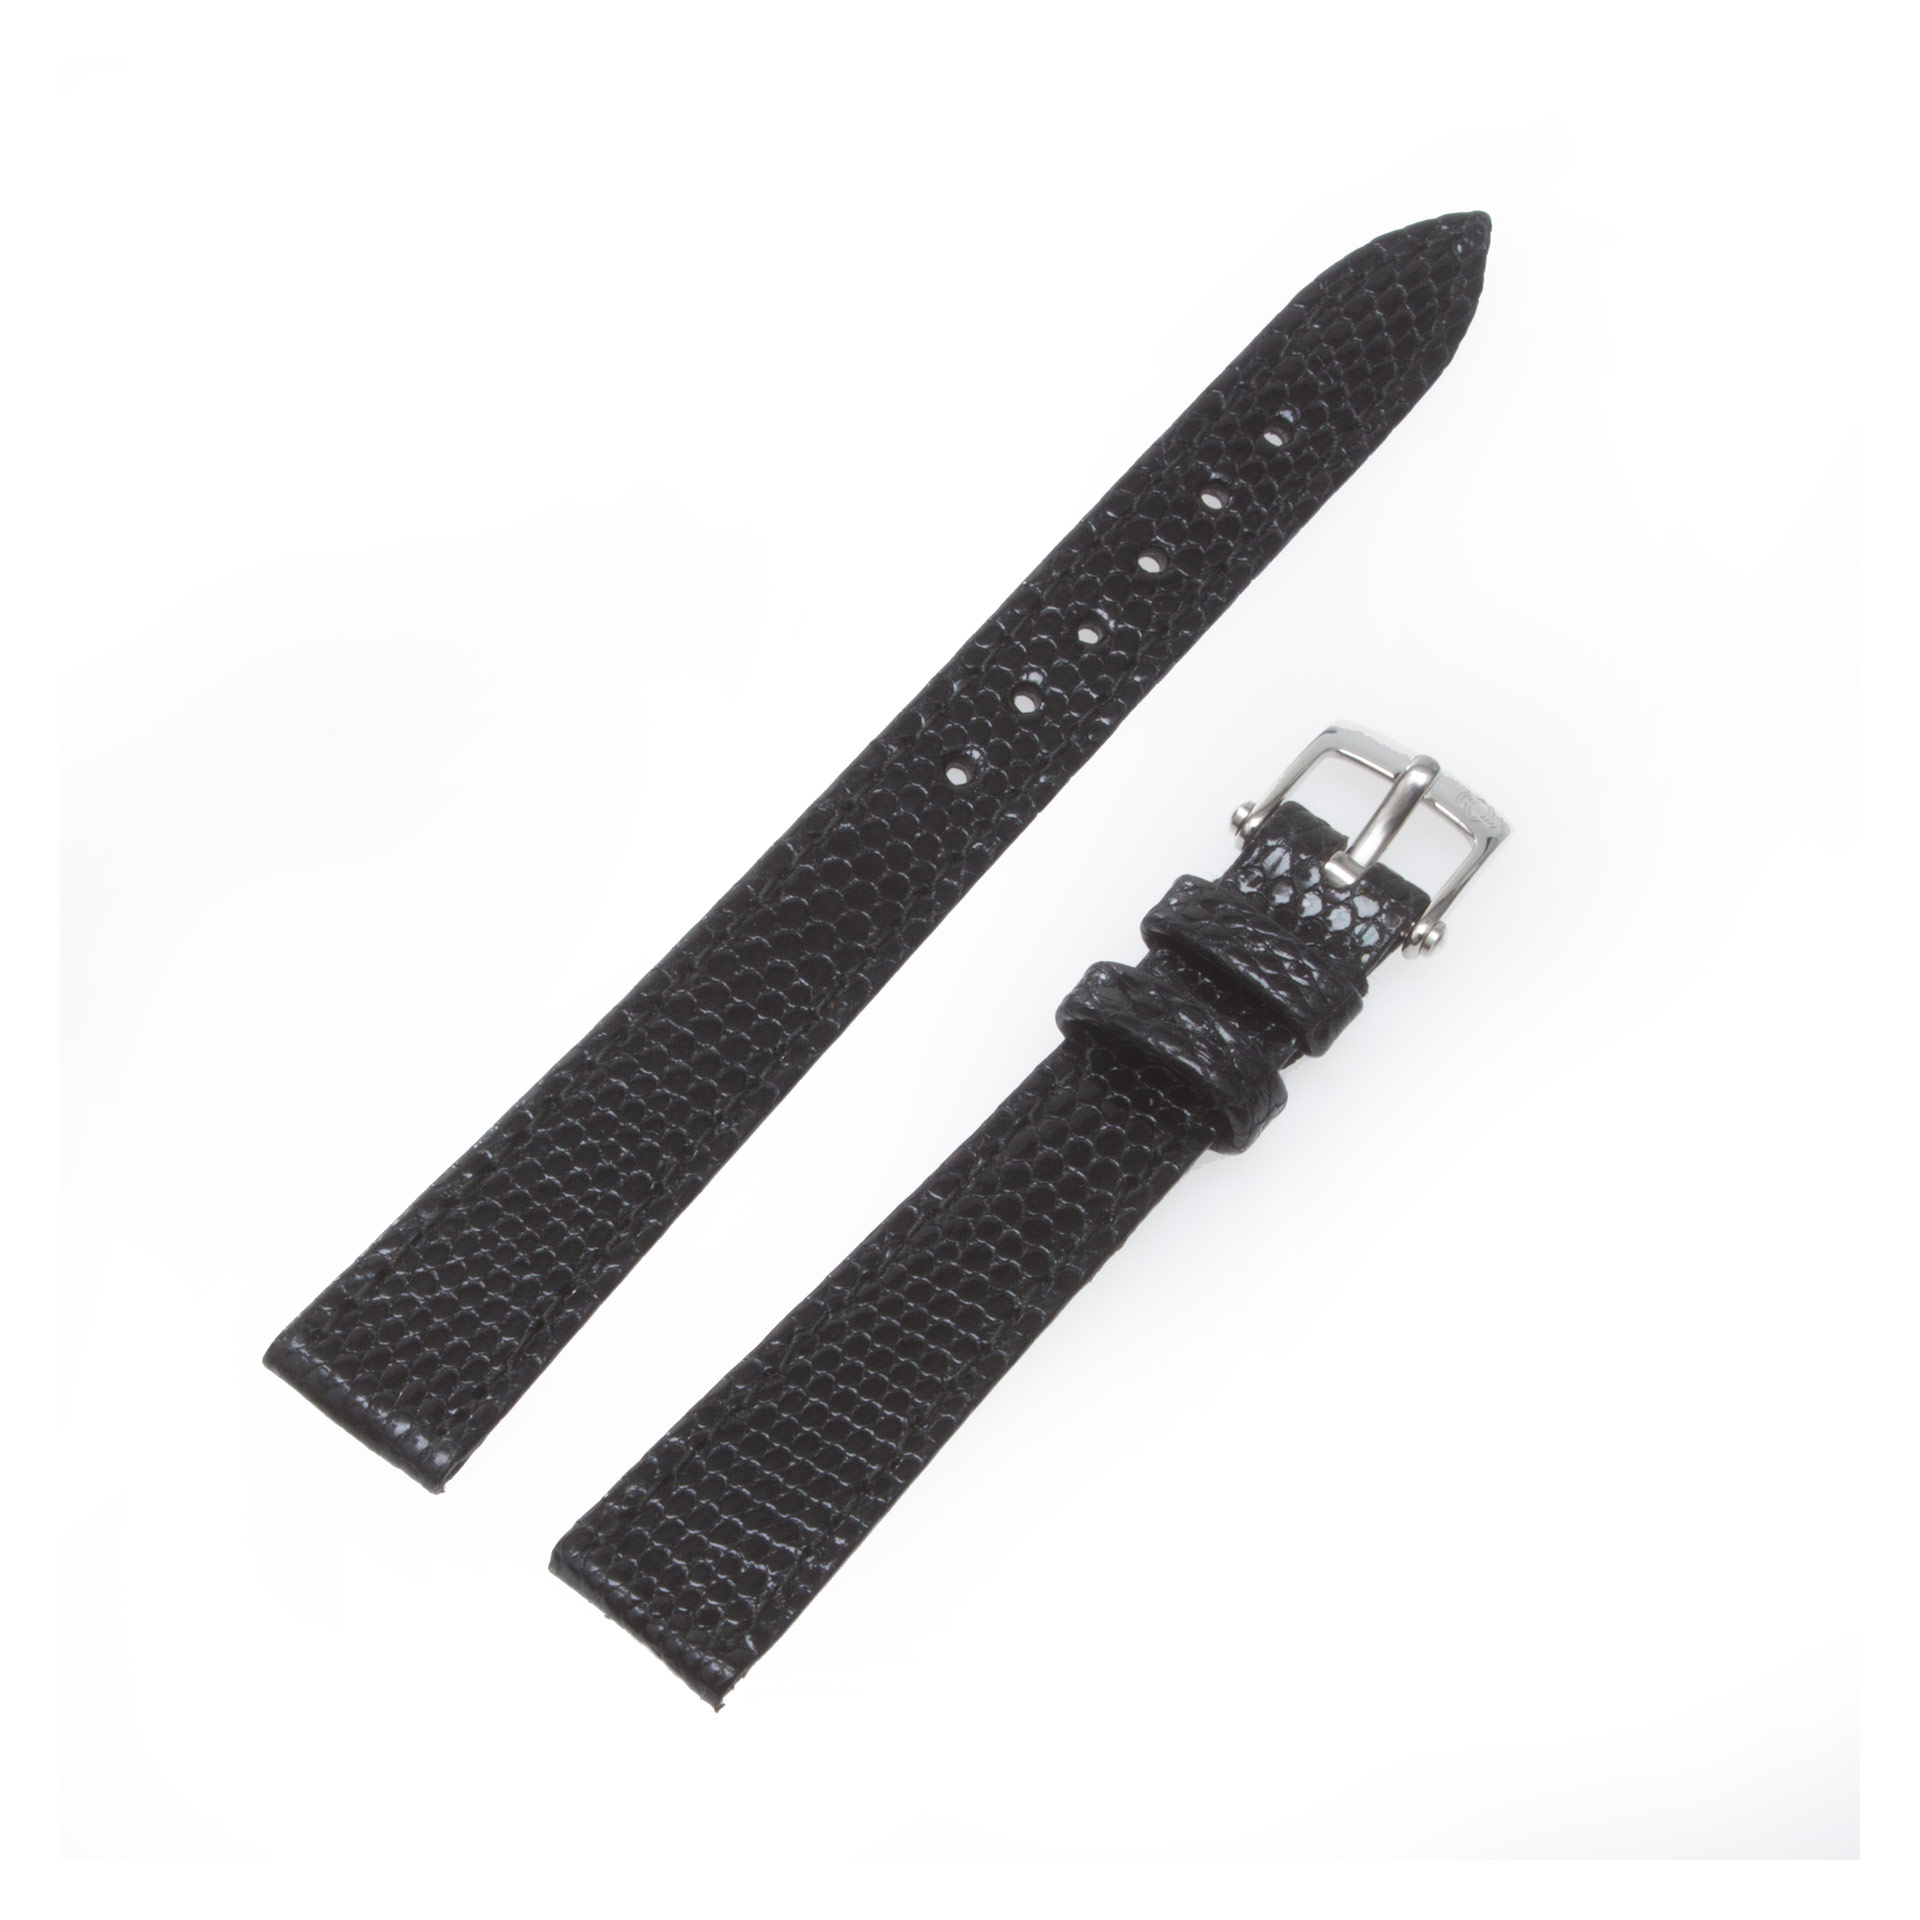 Van Cleef & Arpels black lizard strap with stainless steel tang buckle 12mm x 10mm